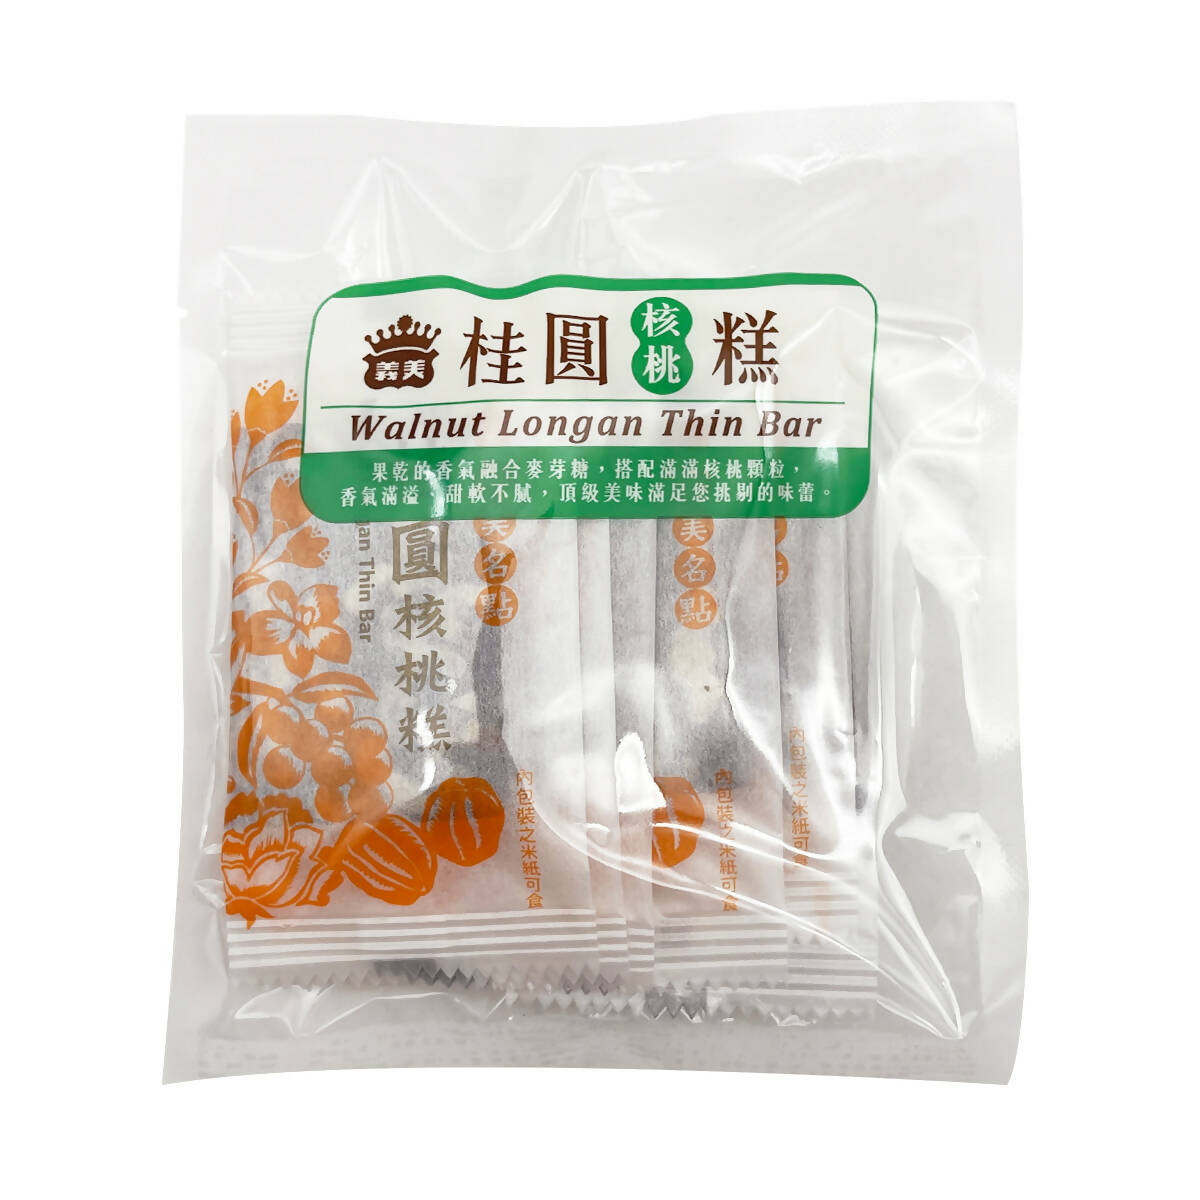 Taiwan direct mail【Yimei】I-MEI Longan Walnut Cake 120g 6pcs 